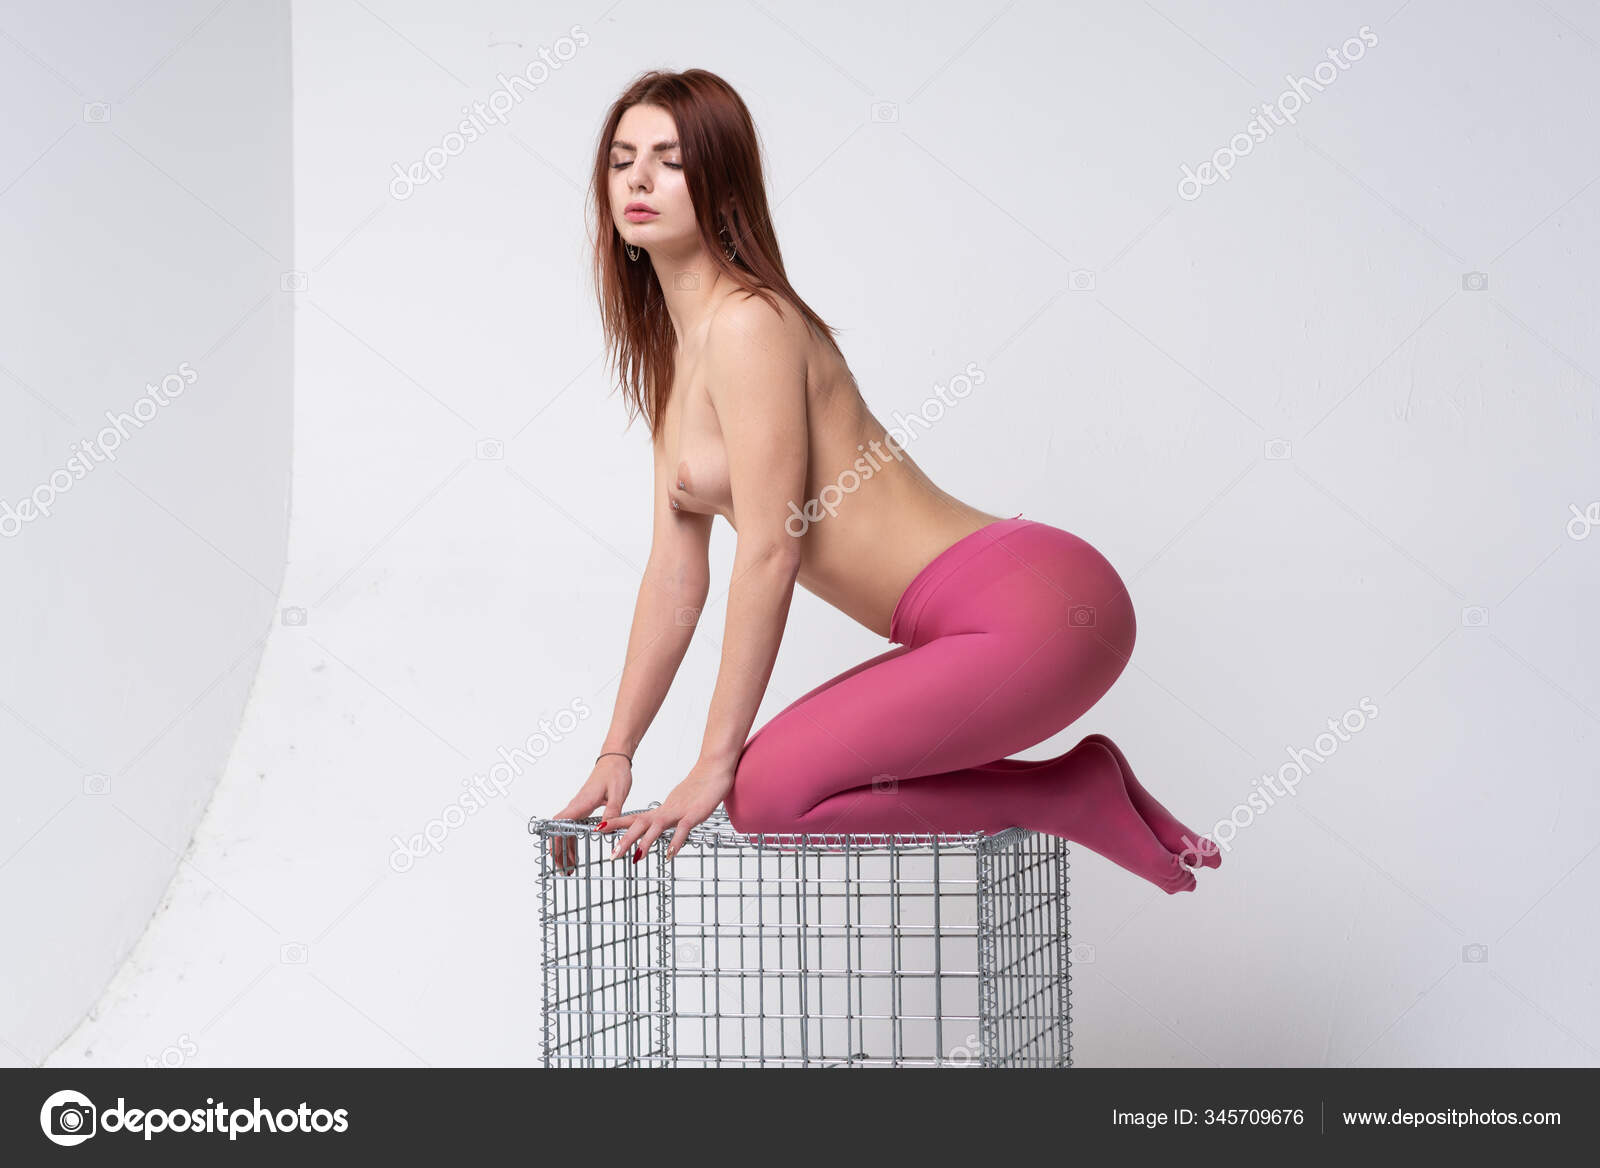 https://st3.depositphotos.com/10086424/34570/i/1600/depositphotos_345709676-stock-photo-young-beautiful-girl-sitting-metal.jpg